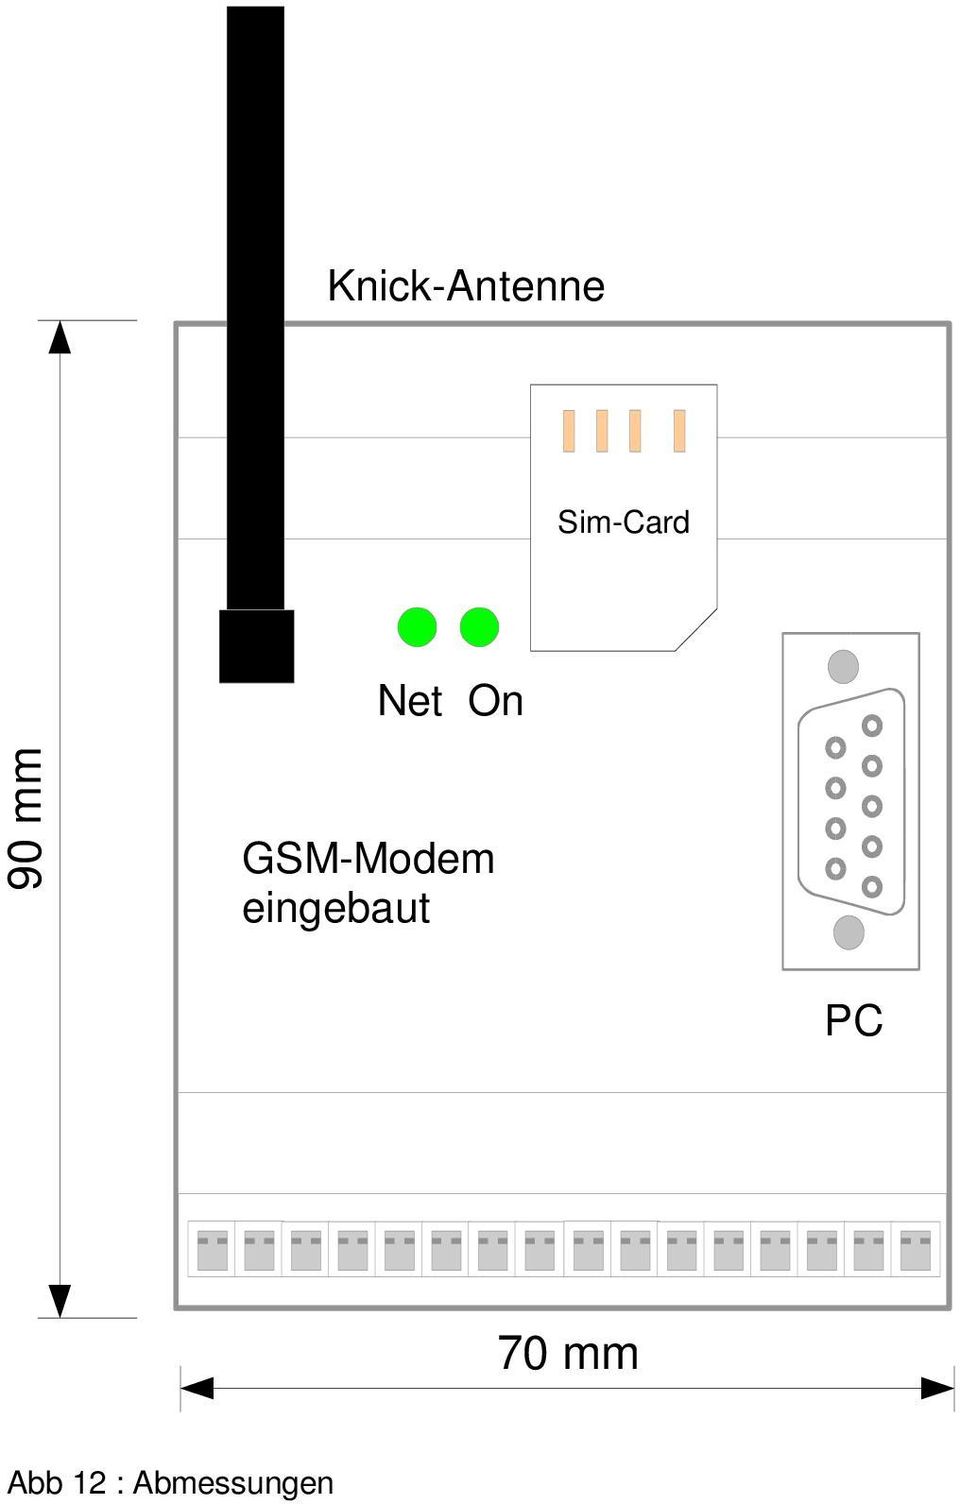 GSM-Modem eingebaut